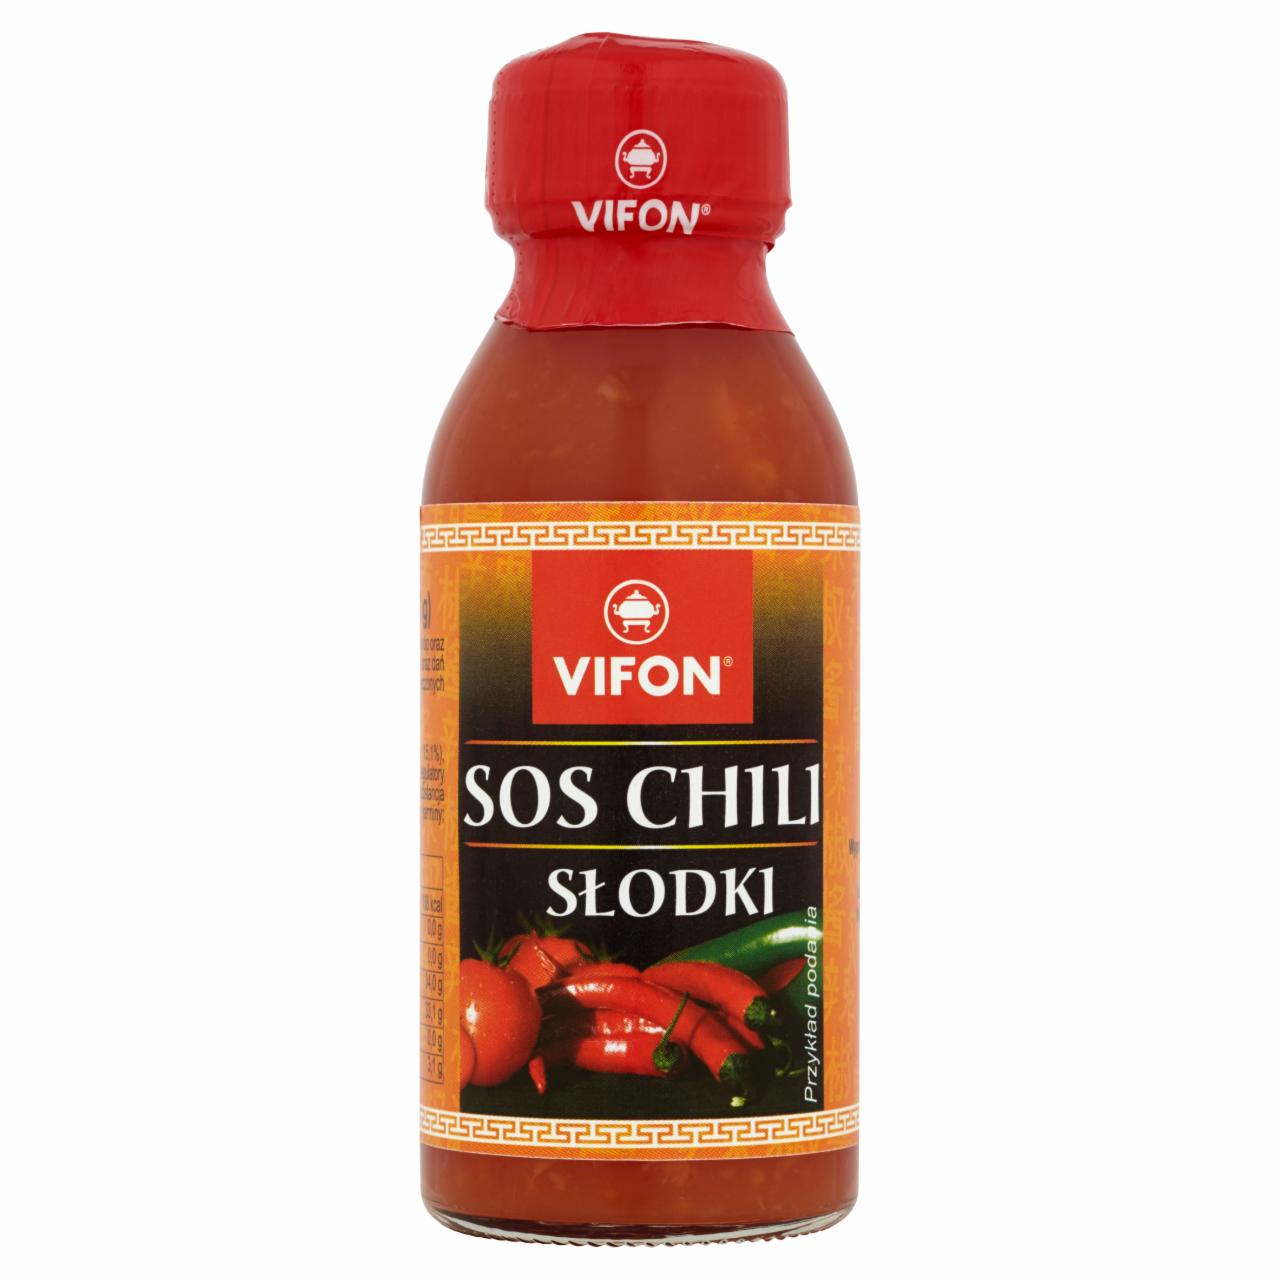 Zdjęcia - Vifon Sos chili słodki 100 ml